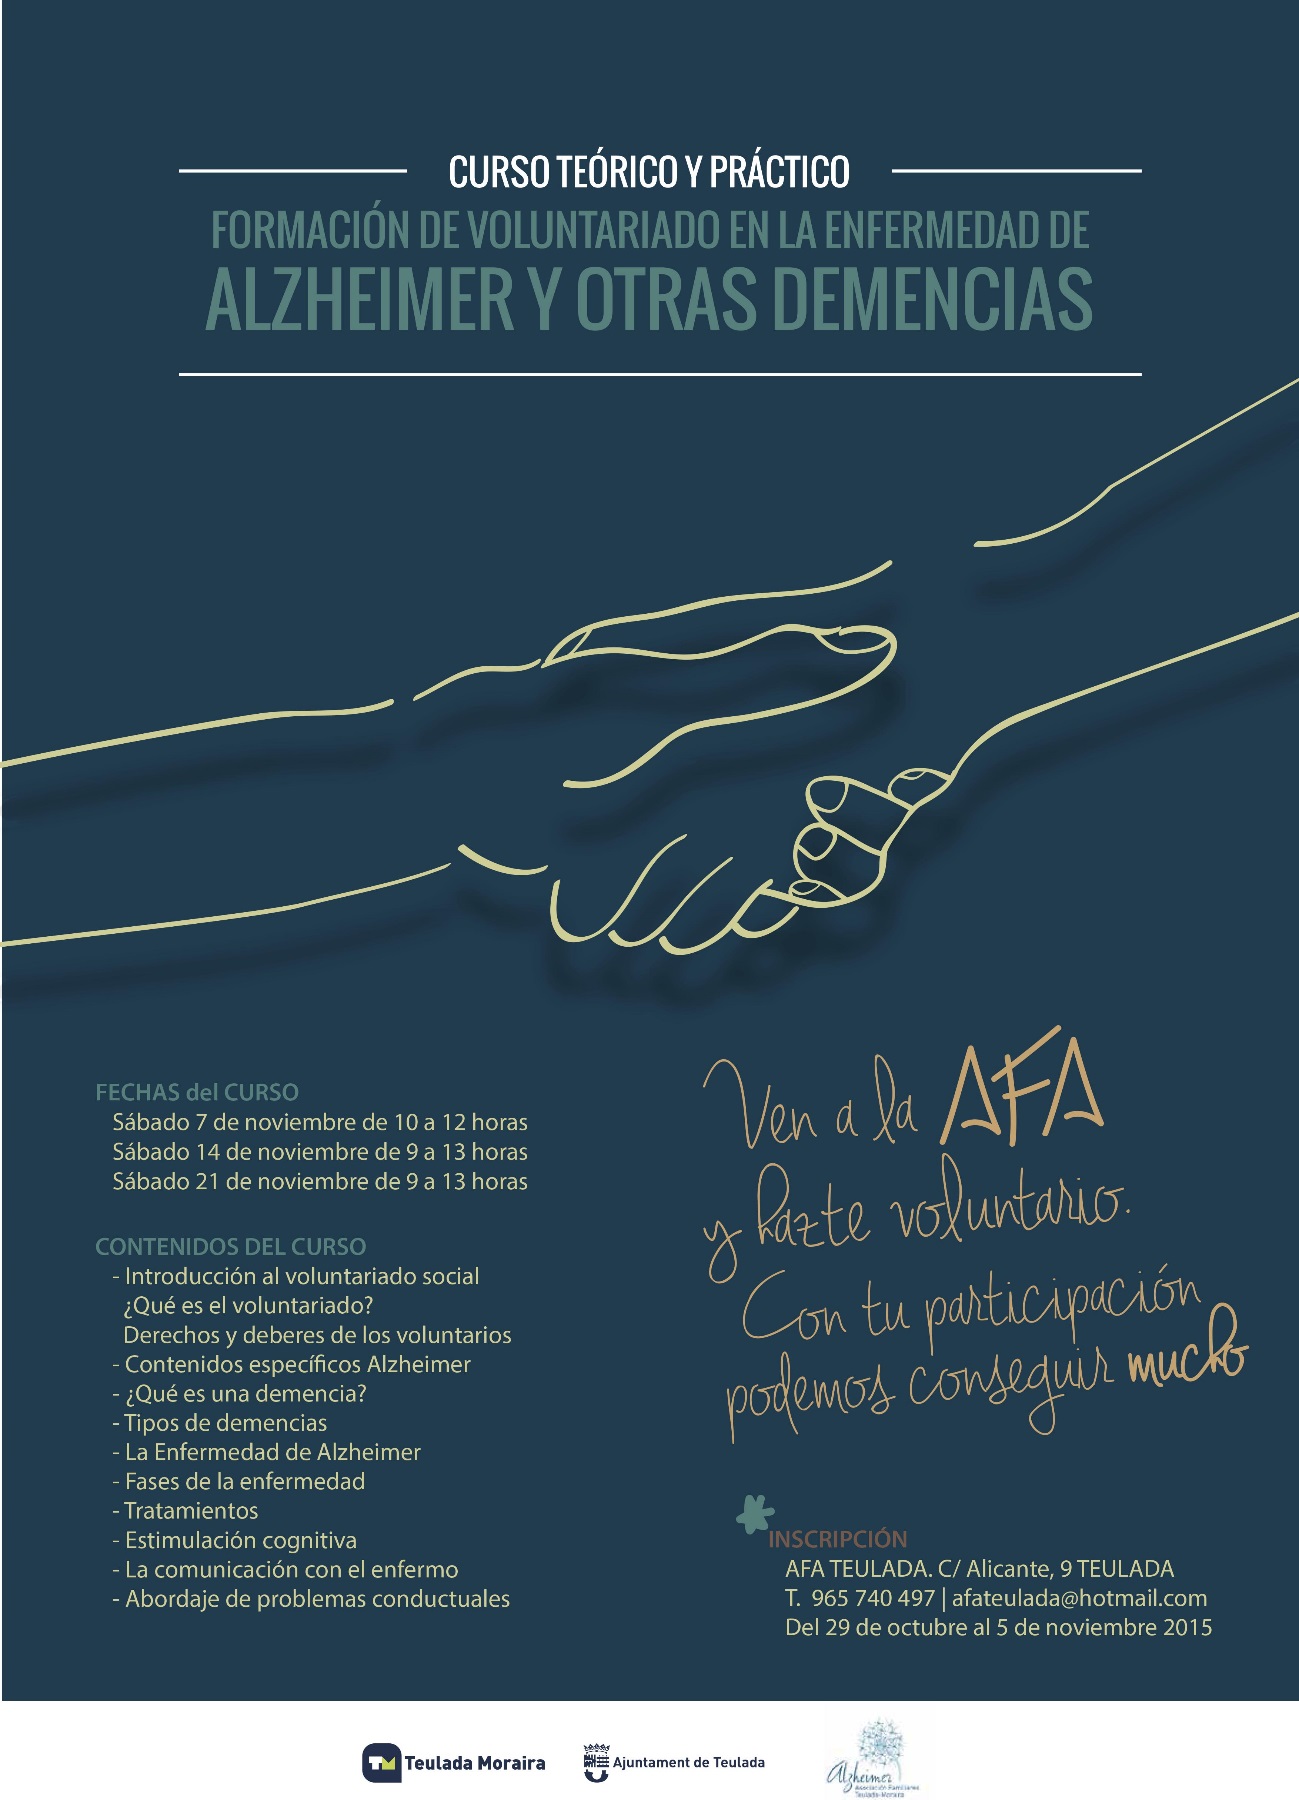 Curso de Voluntariado, formación teórico práctica en Alzheimer y otras demencias (II edición)